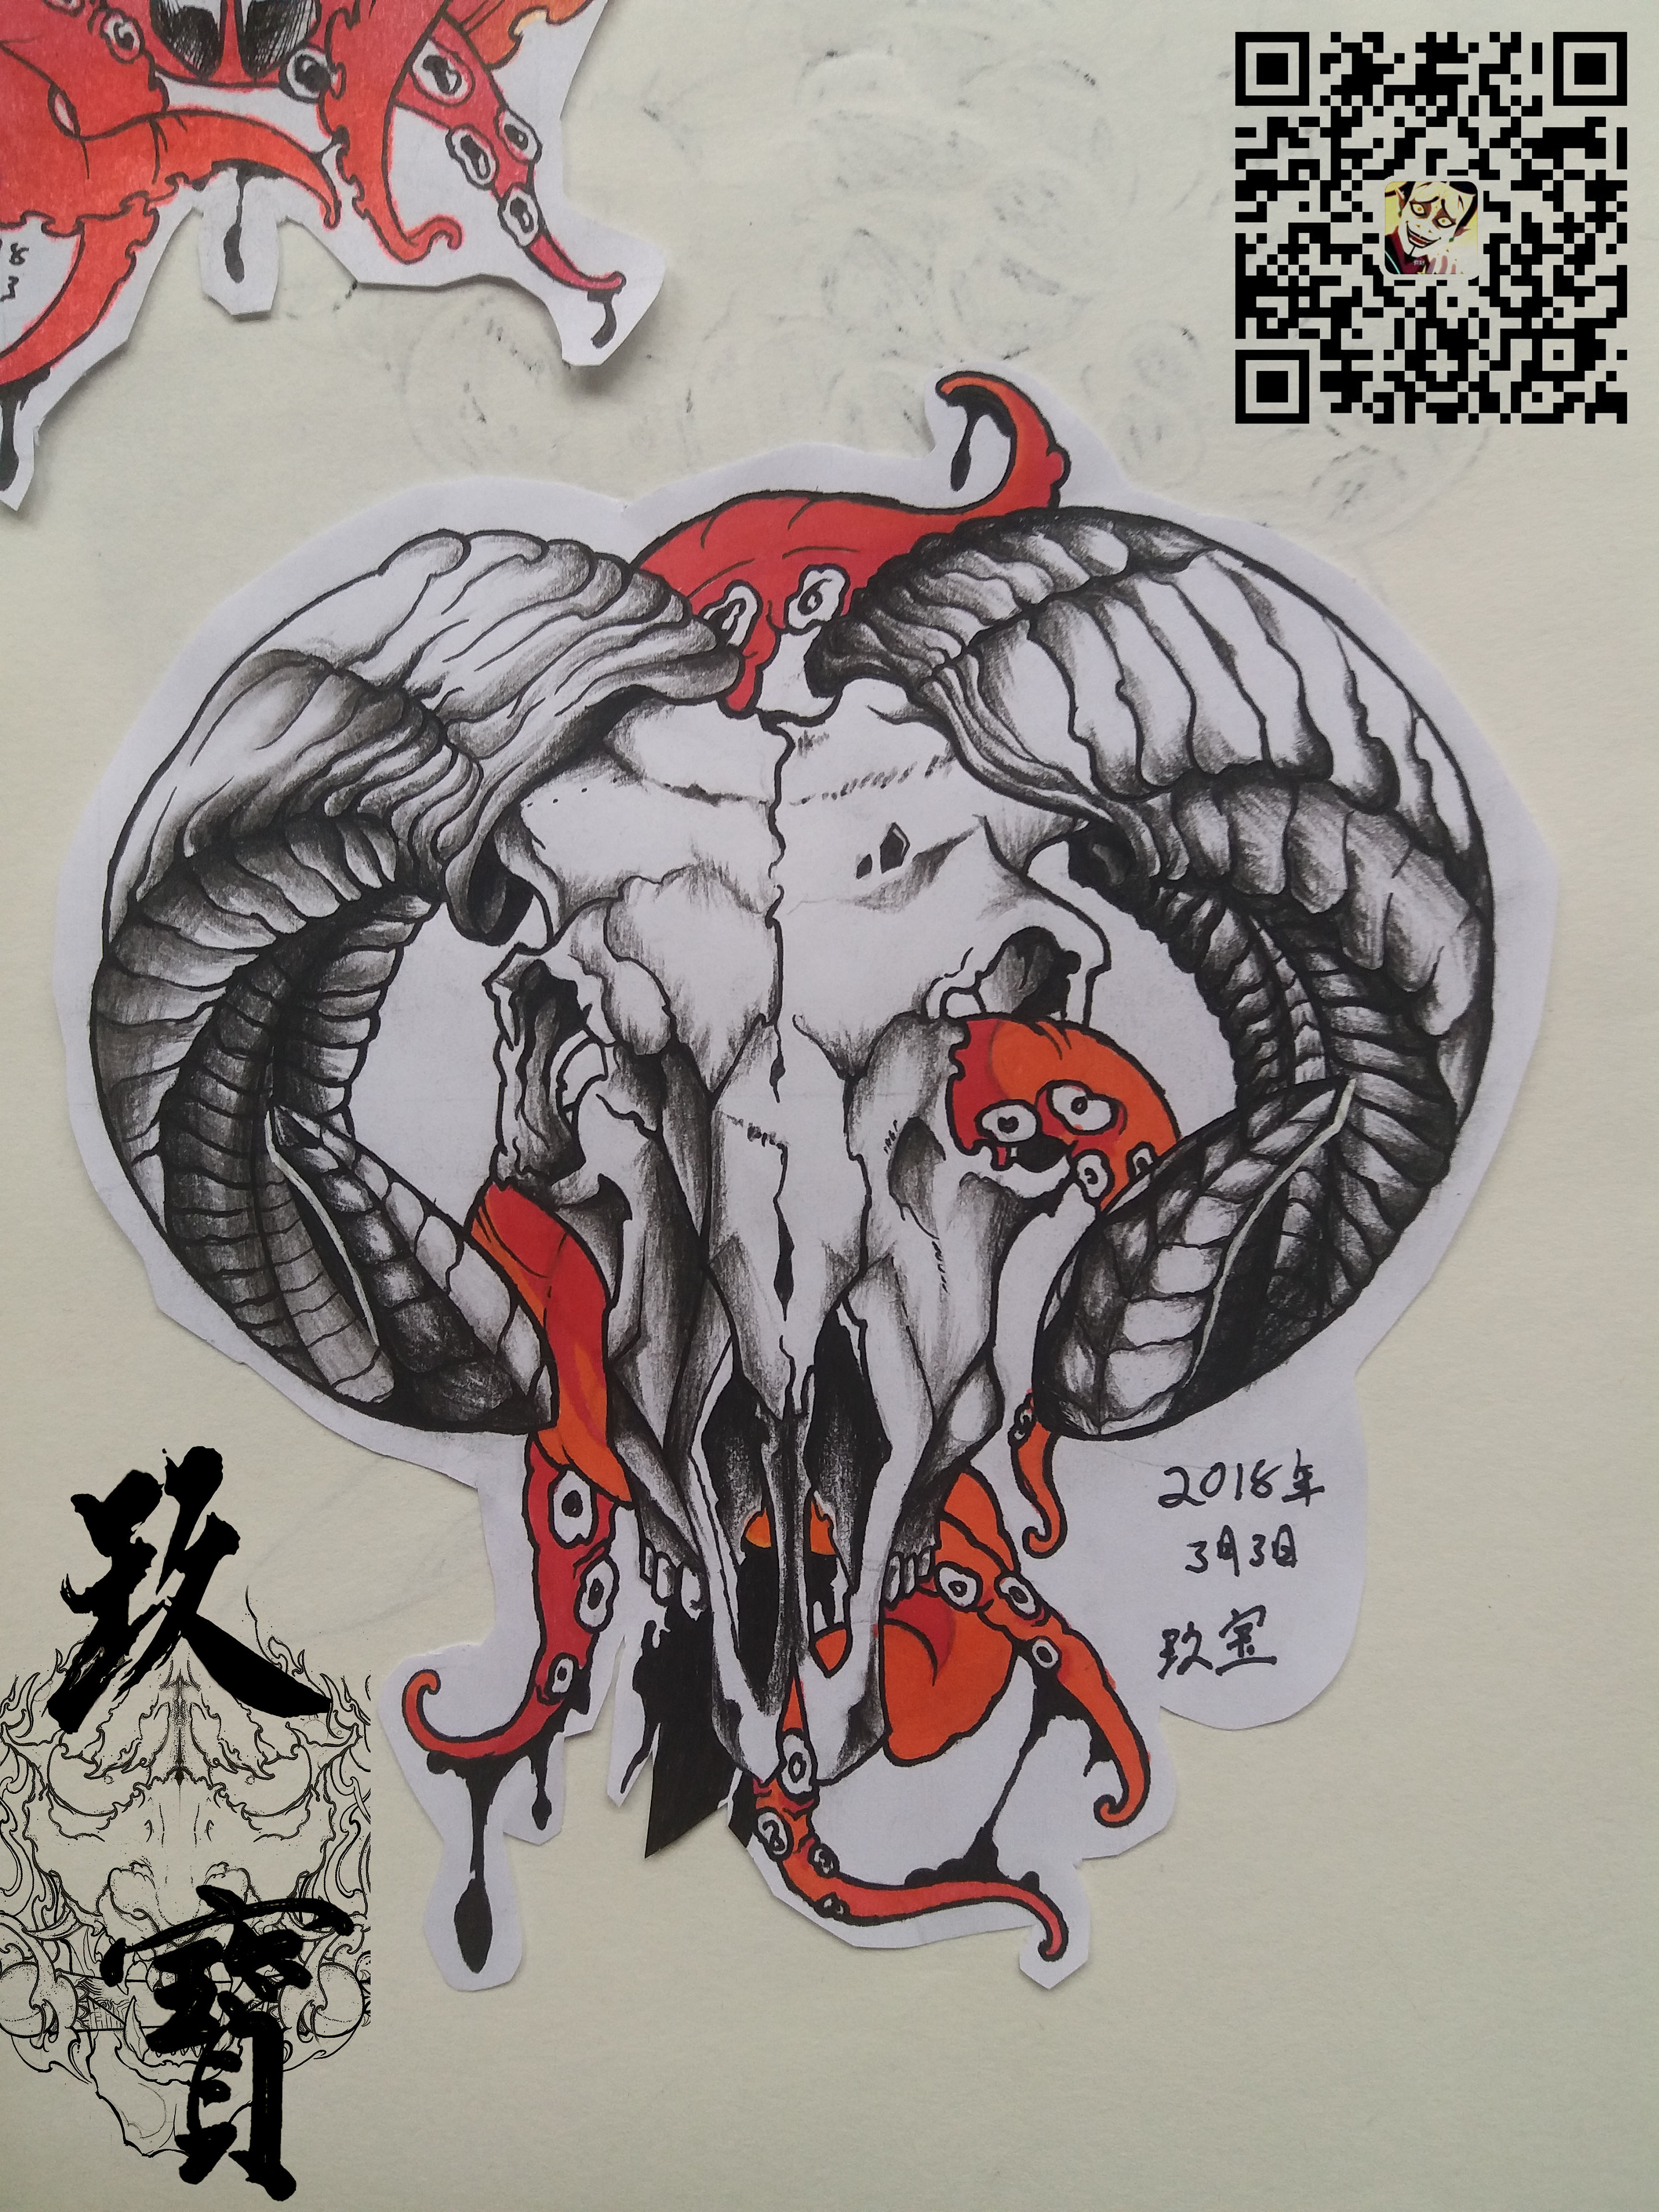 暗黑系骷髅羊头纹身手稿图片(图片编号:243053)_纹身手稿 - 刺青会